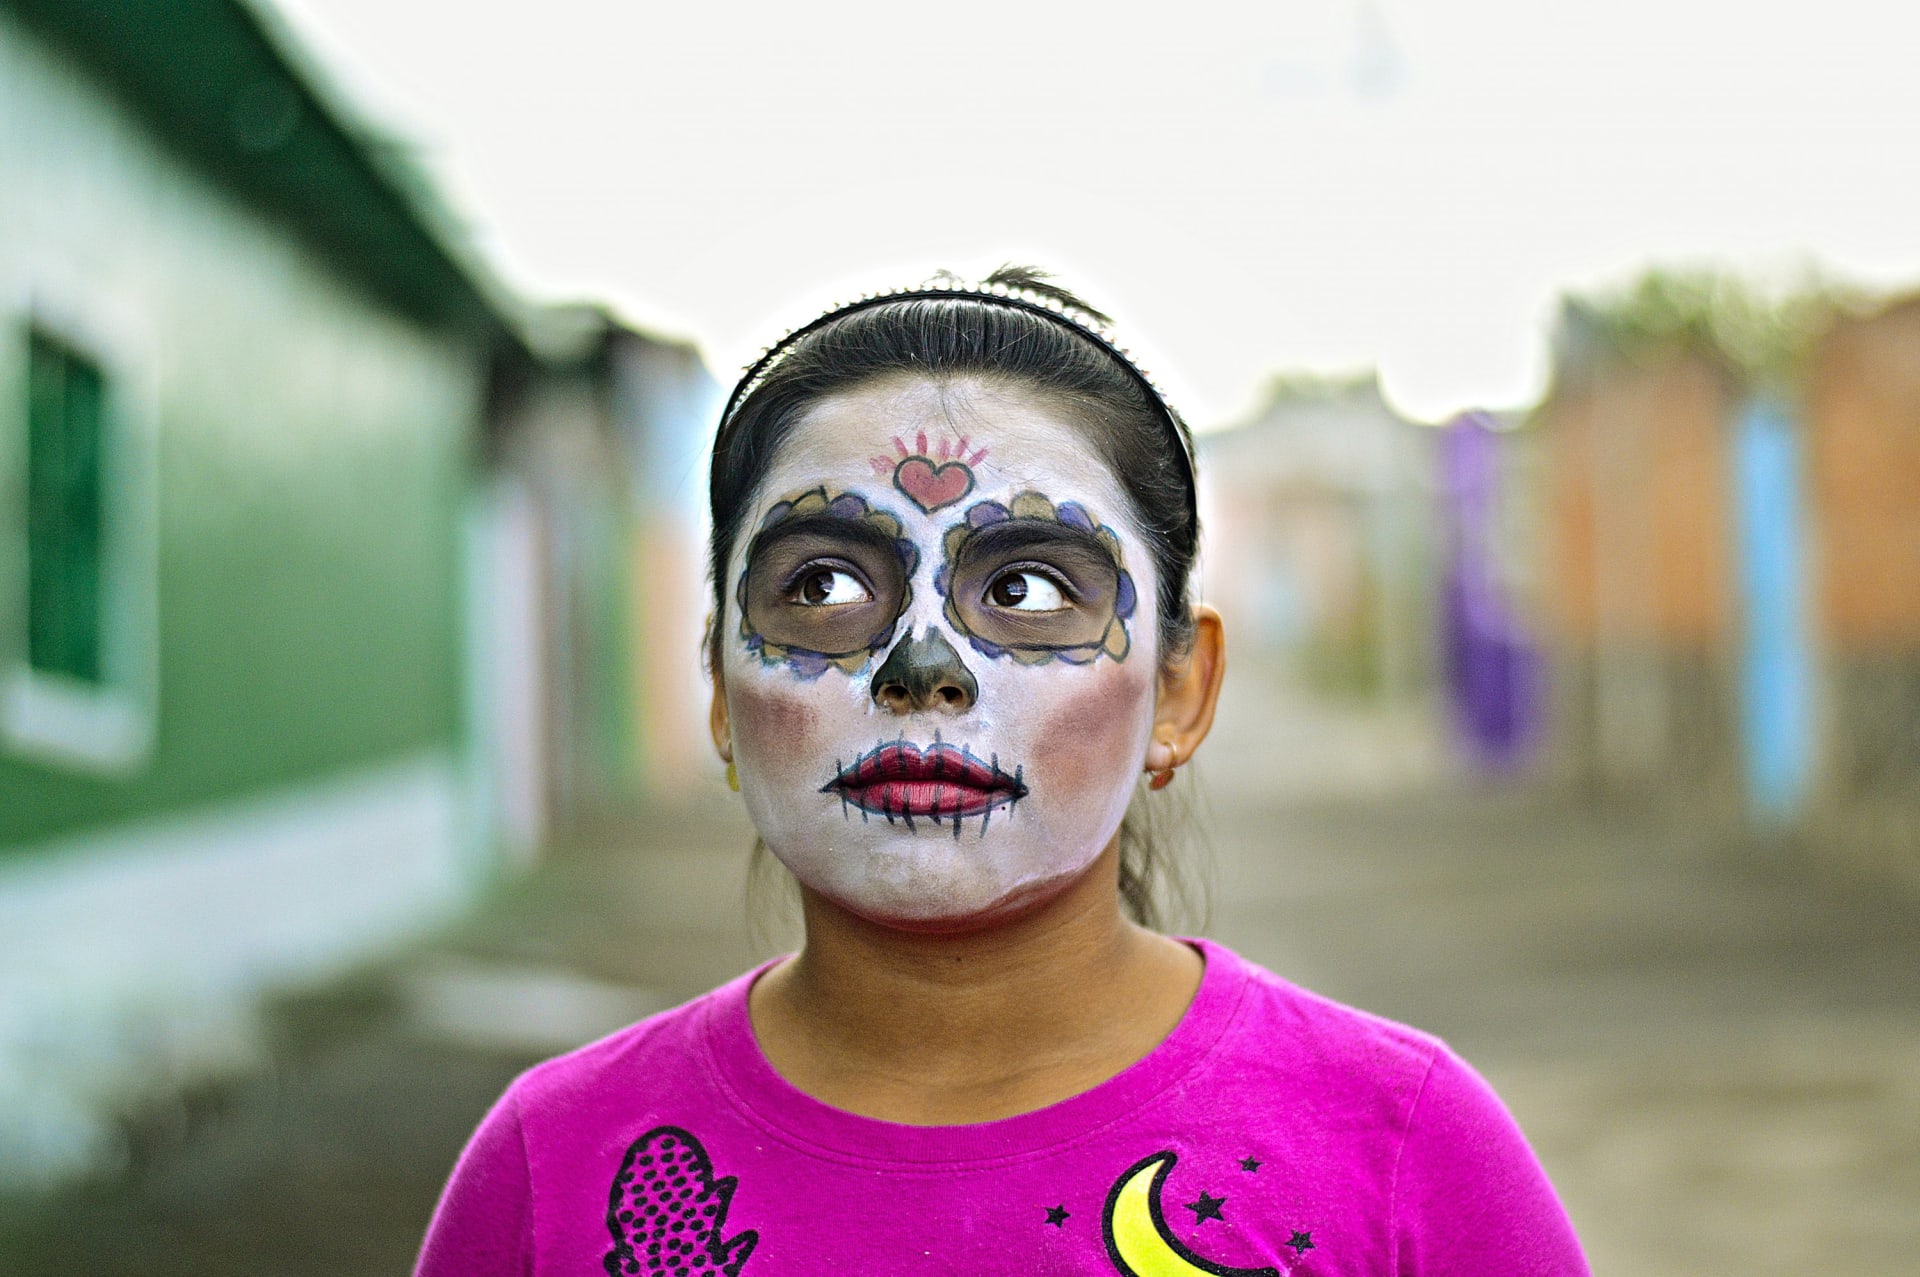 České Dušičky moc zábavné nejsou, americký Halloween většina lidí nemá ráda. Ideální příležitost, abyste zkusili oslavit Dušičky jako v Mexiku. Tahle oslava je tak výrazná a jedinečná, že ji chrání UNESCO. Mísí se tu indiánské tradice s křesťanstvím a všude je spoustu barev a jídla.